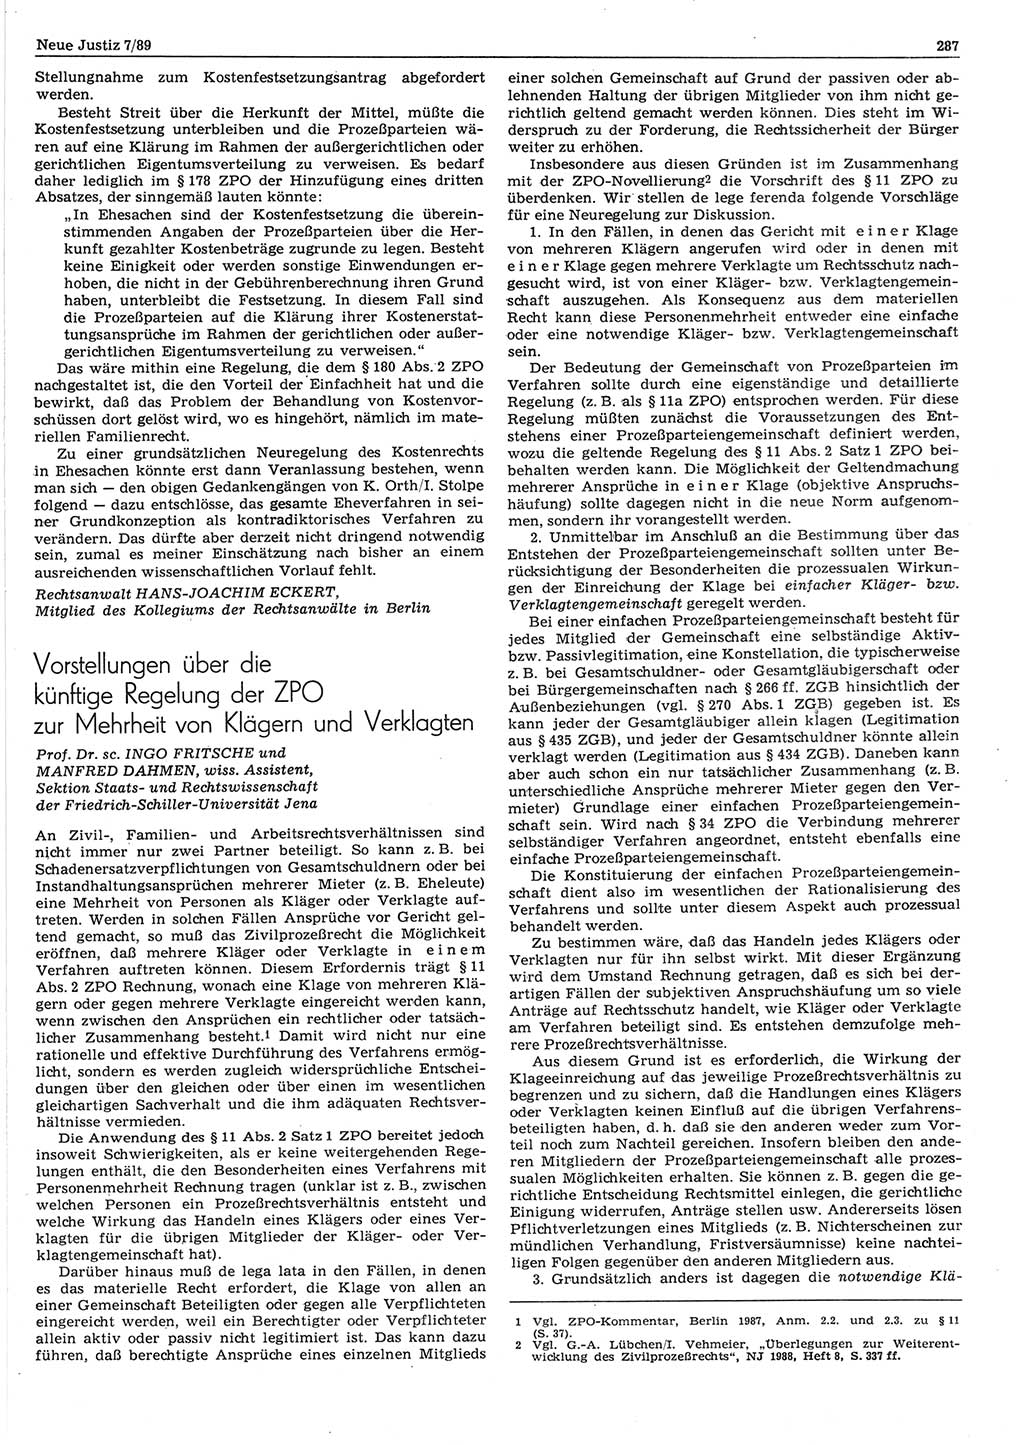 Neue Justiz (NJ), Zeitschrift für sozialistisches Recht und Gesetzlichkeit [Deutsche Demokratische Republik (DDR)], 43. Jahrgang 1989, Seite 287 (NJ DDR 1989, S. 287)